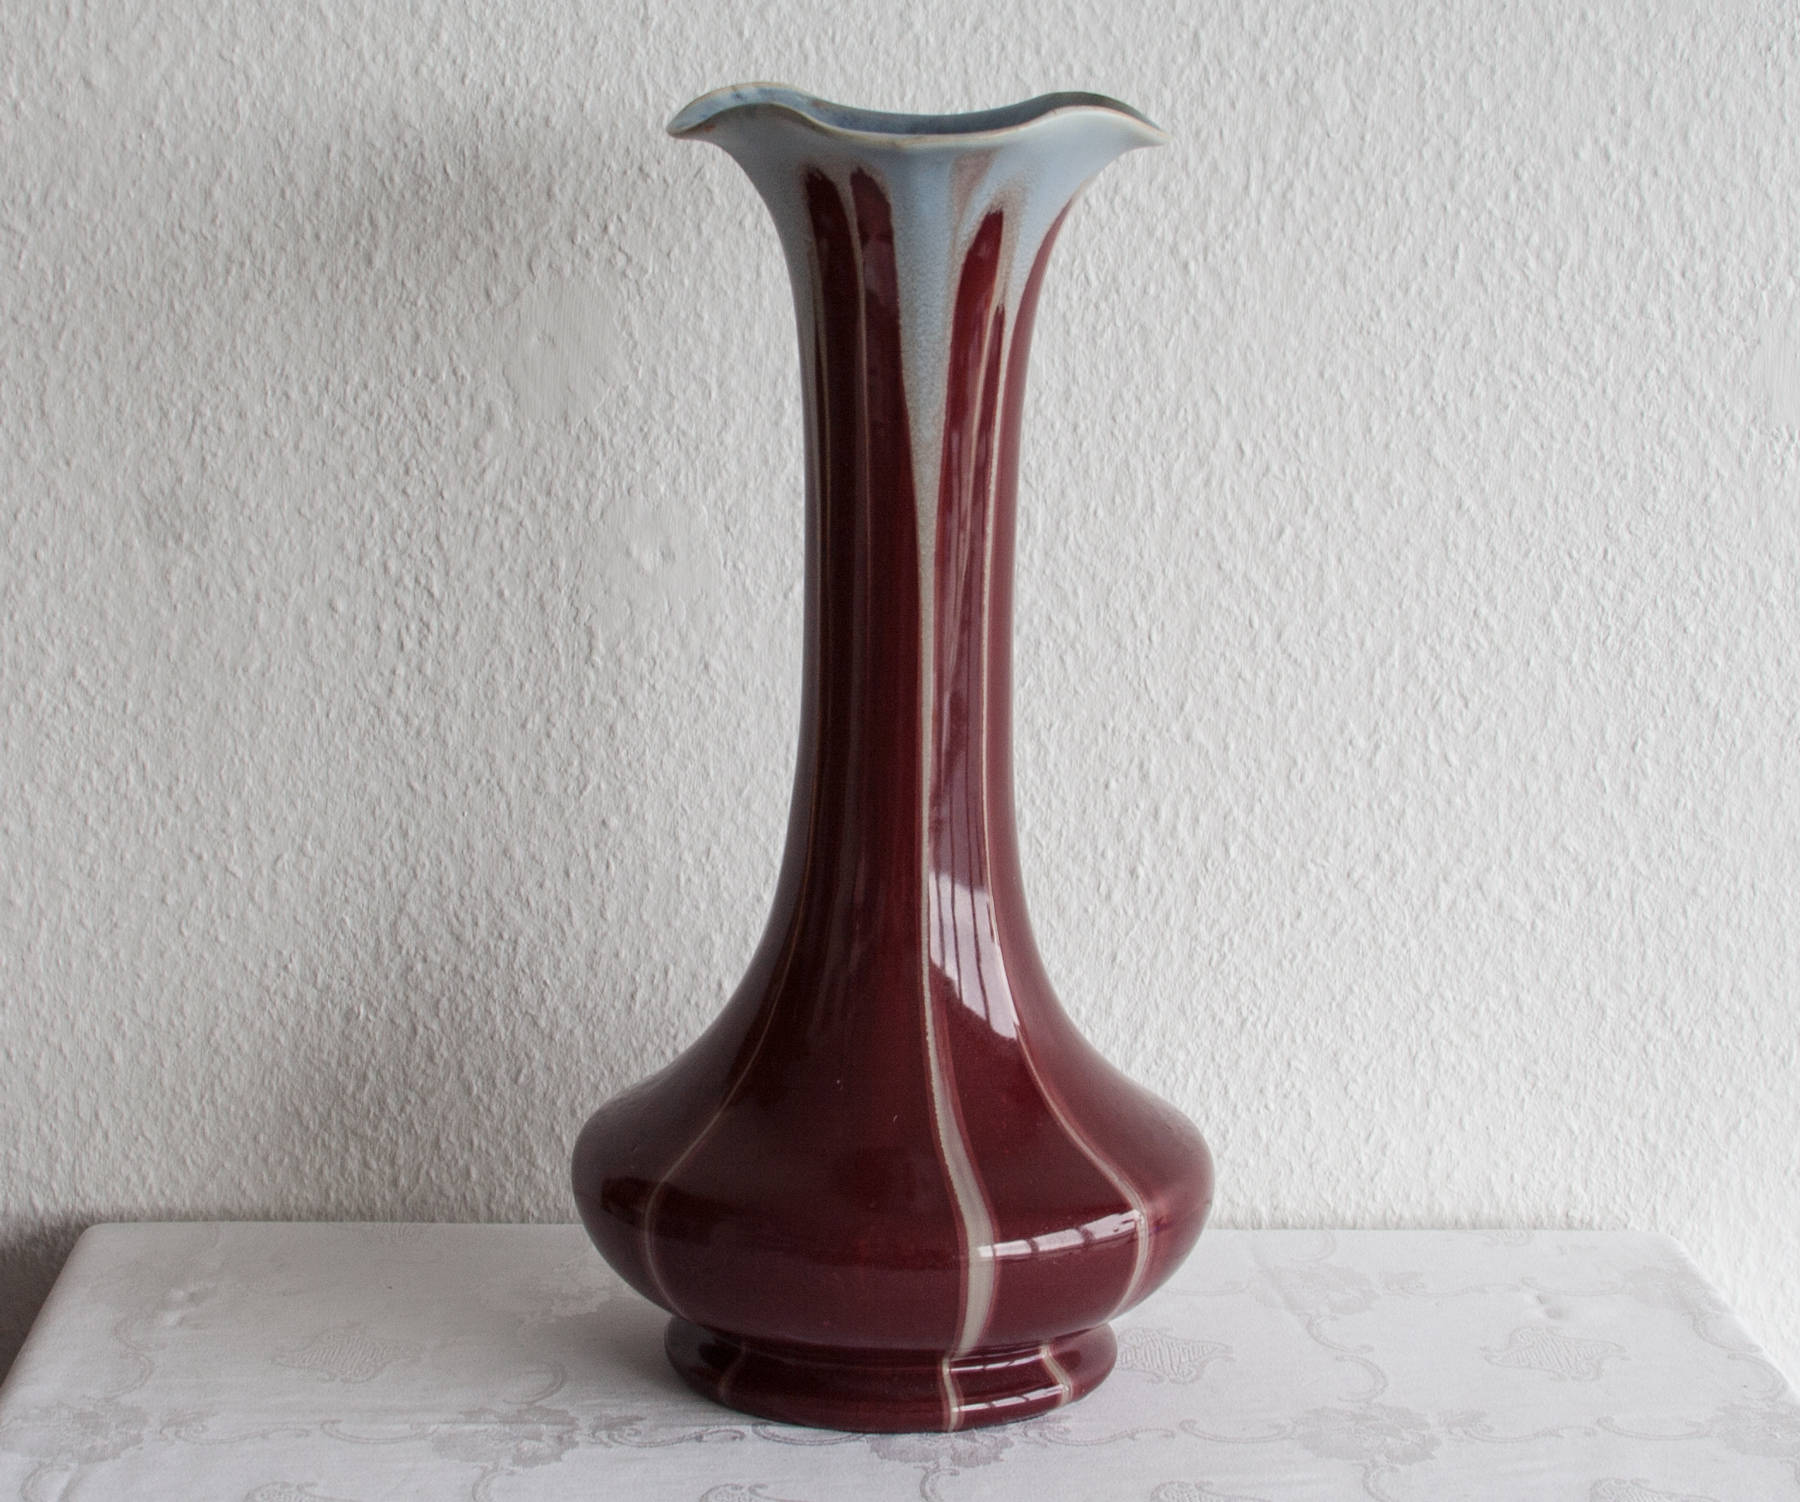 Faiencerie Thulin BELGIUM Art Nouveau Red & White Drip Glaze Ceramic Floor Vase Mollaris.com 